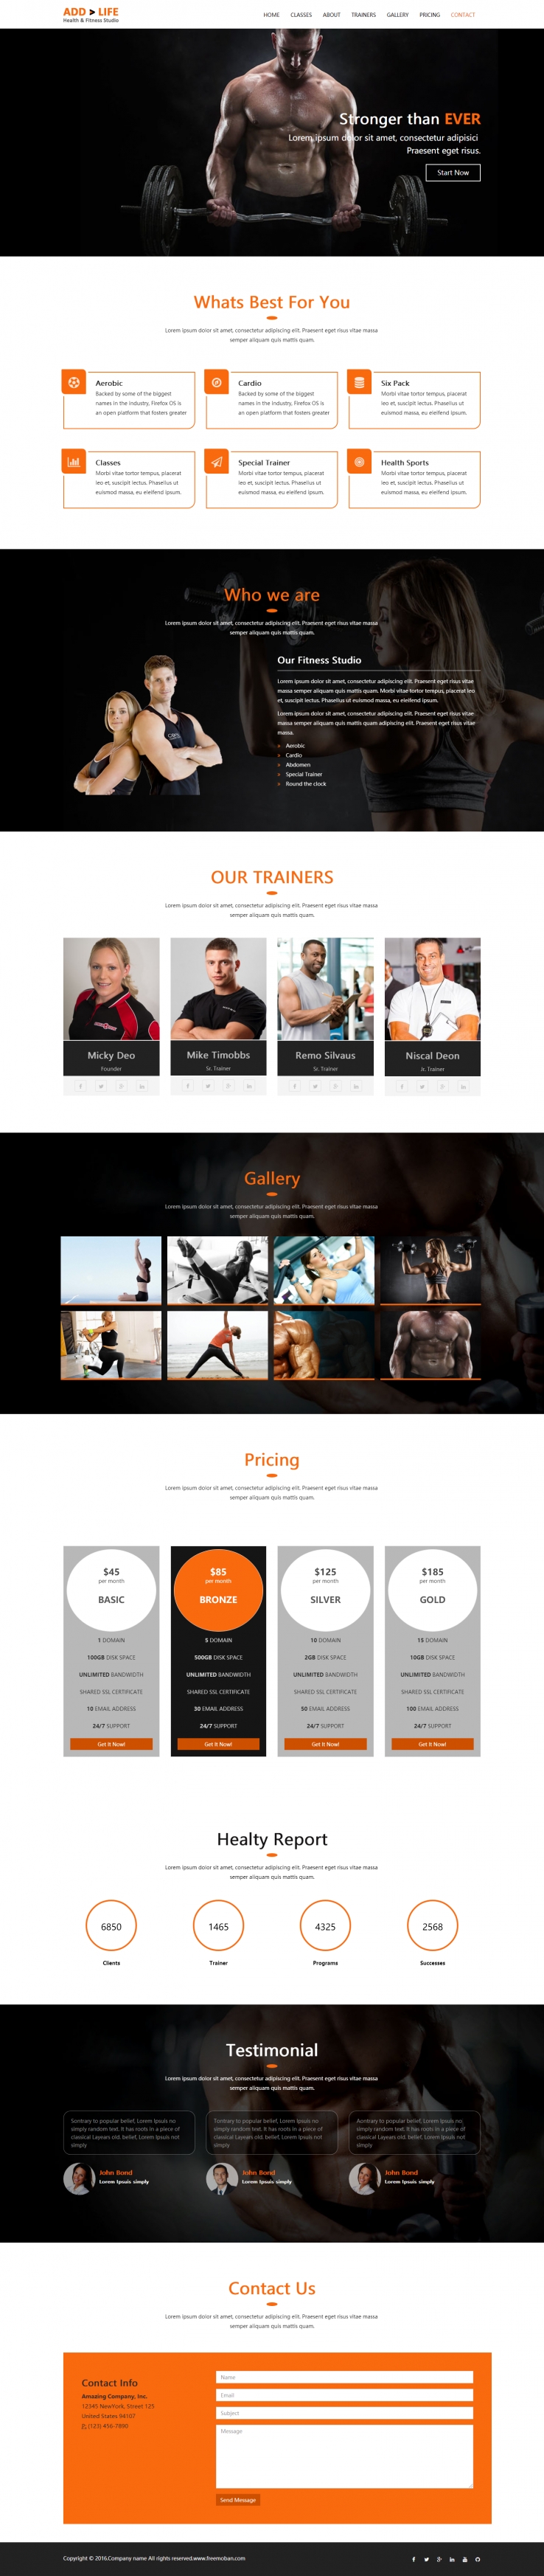 橙色简洁风格的私人健身教练网站模板下载